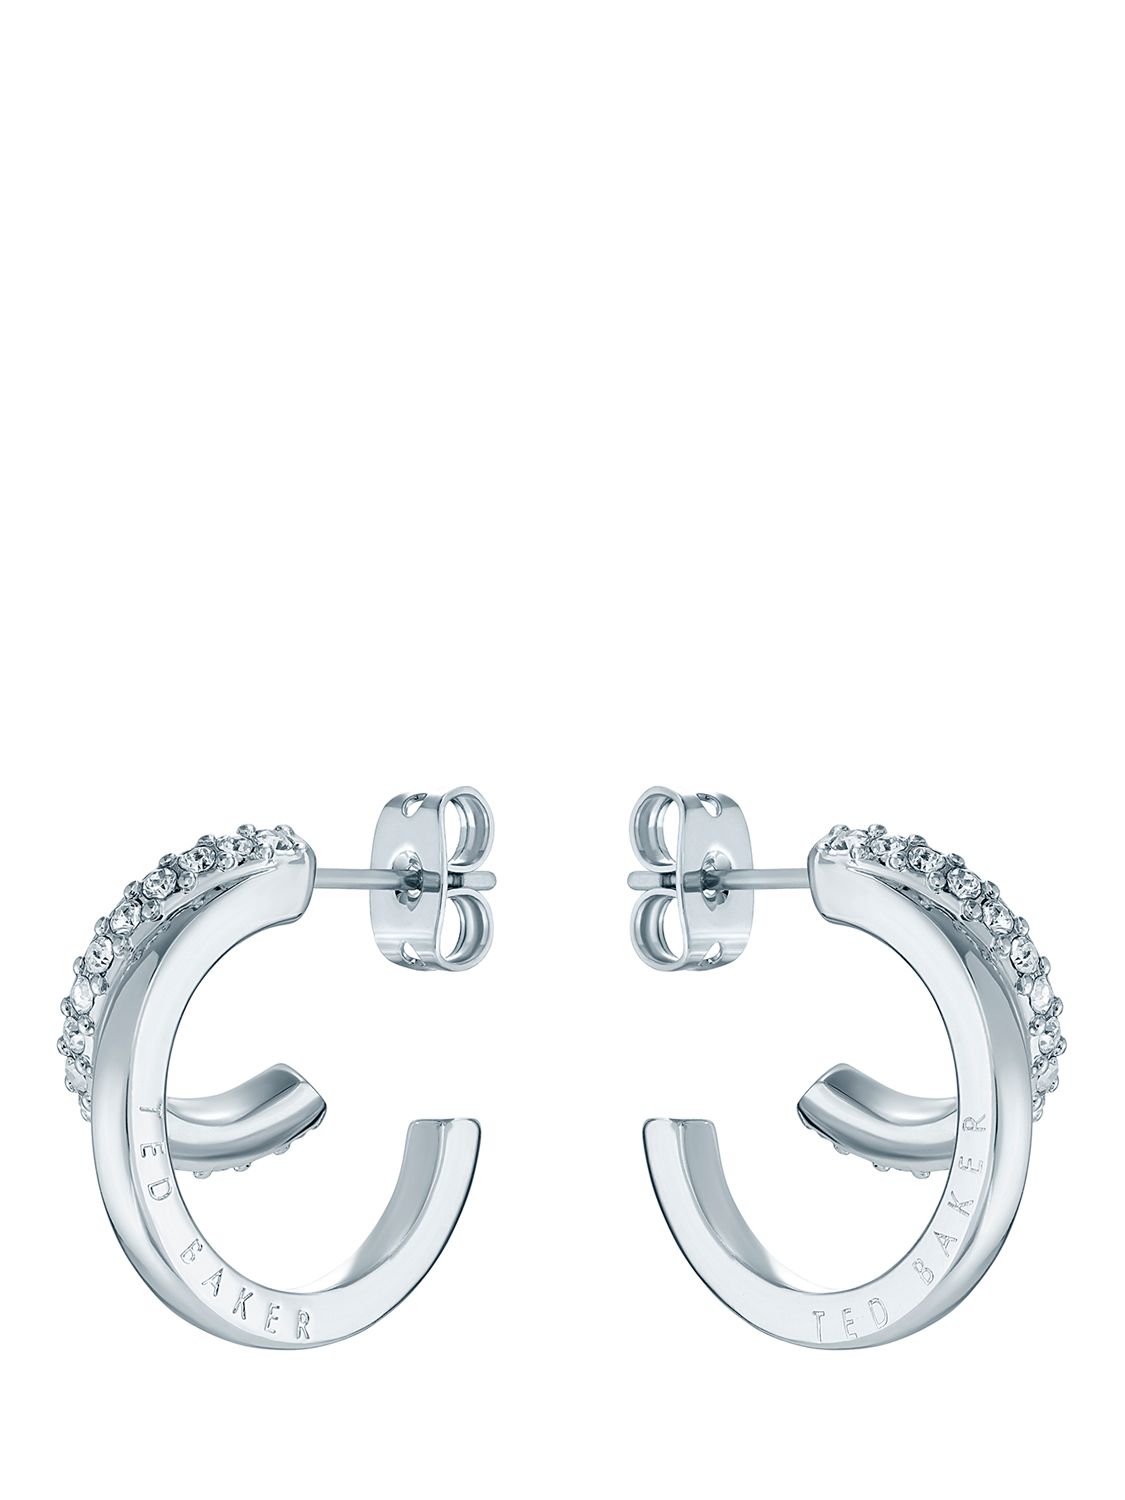 Ted Baker Helias Crystal Double Hoop Earrings, Silver